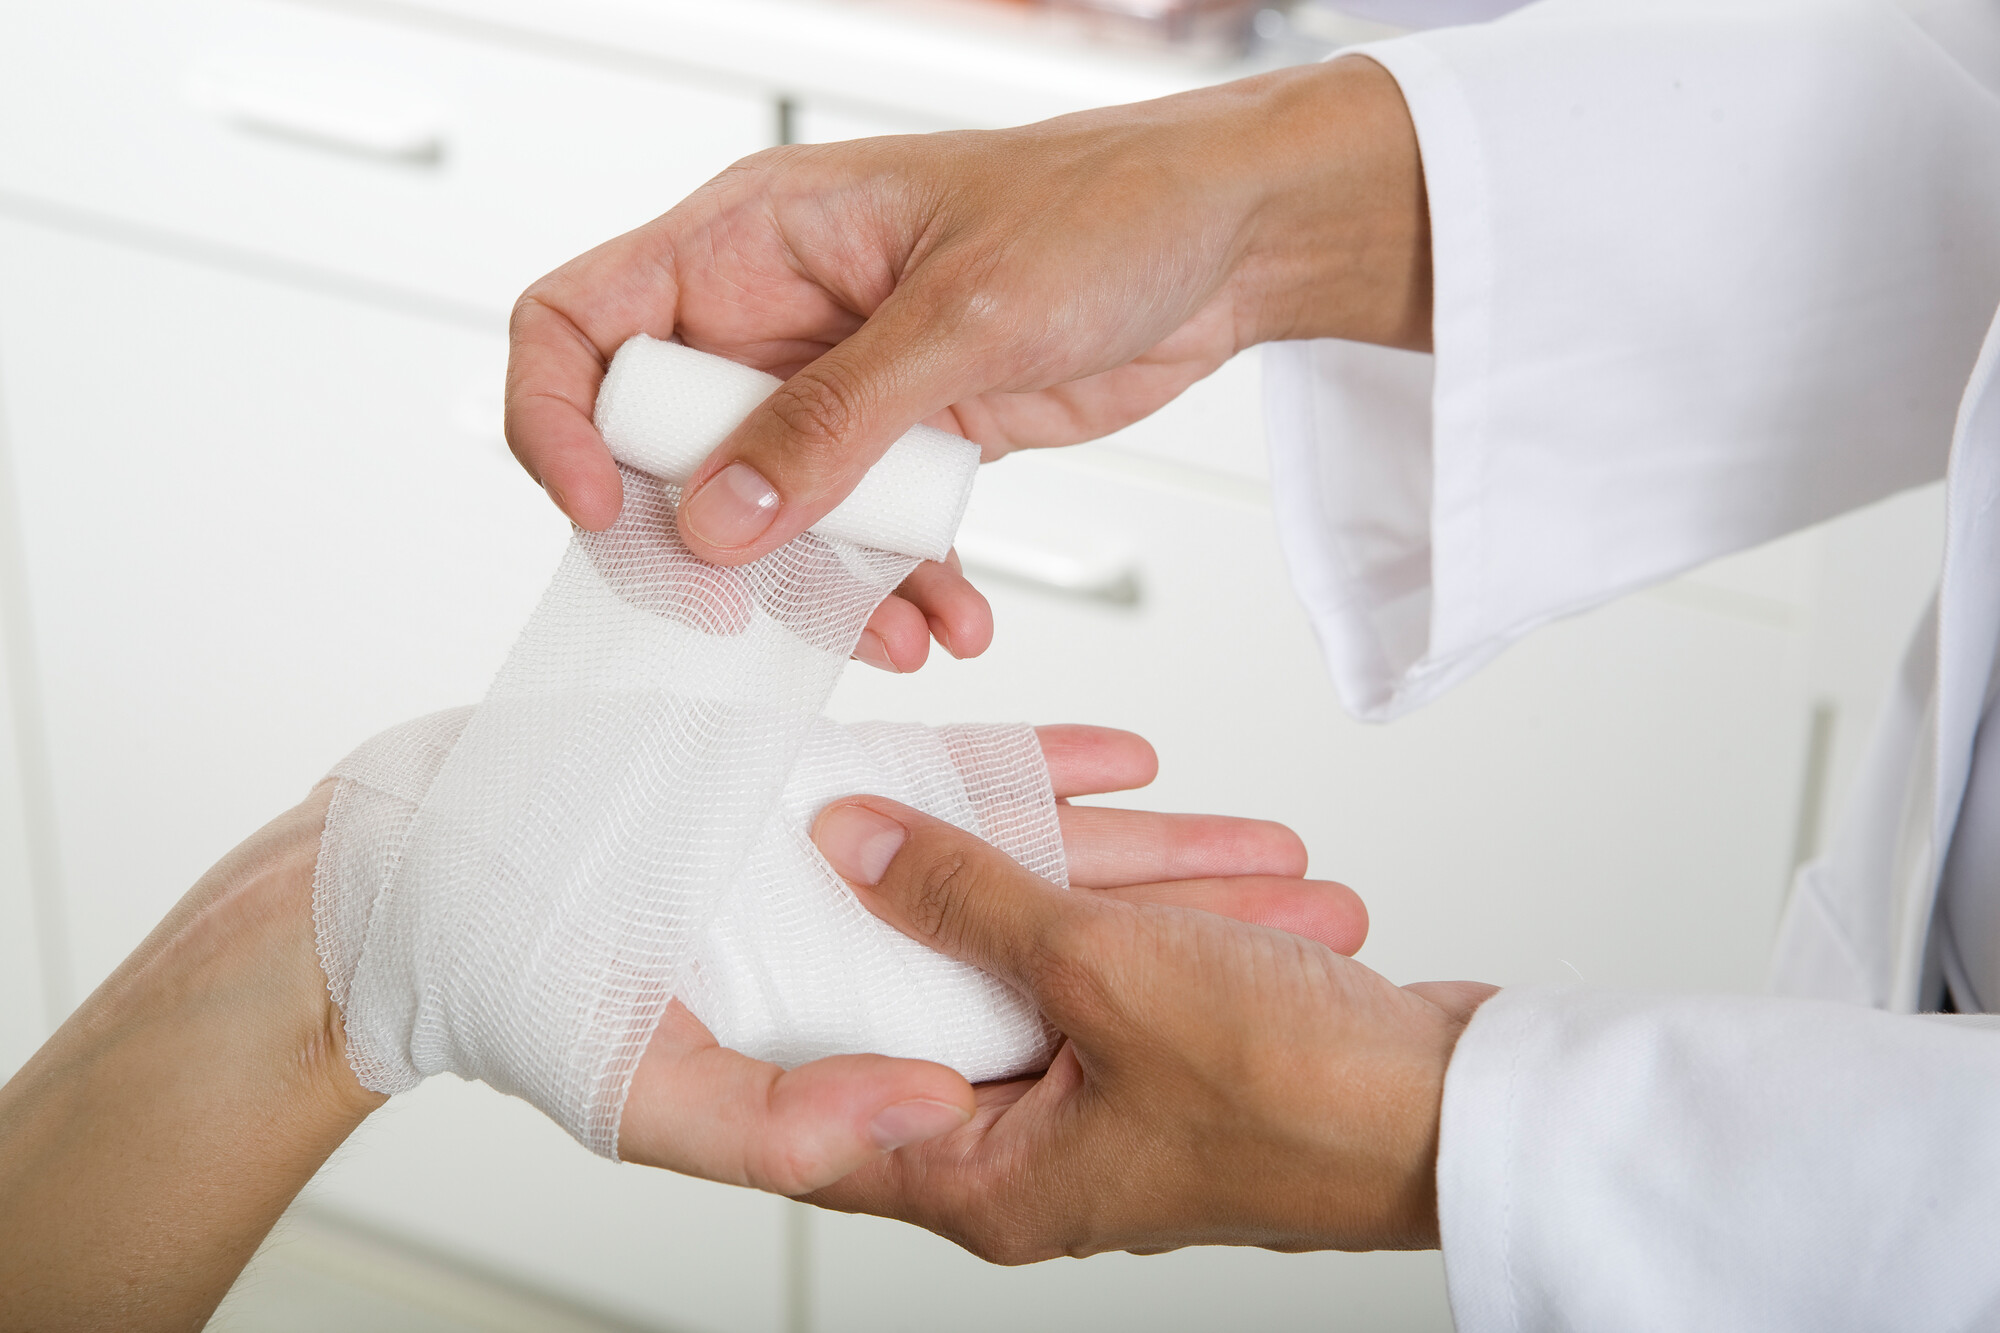 Die Behandlung akuter Verletzungen in der Hausarztpraxis ist ein gängiges Thema. Aber rechnen Sie auch richtig ab? Unser Autor gibt Tipps.